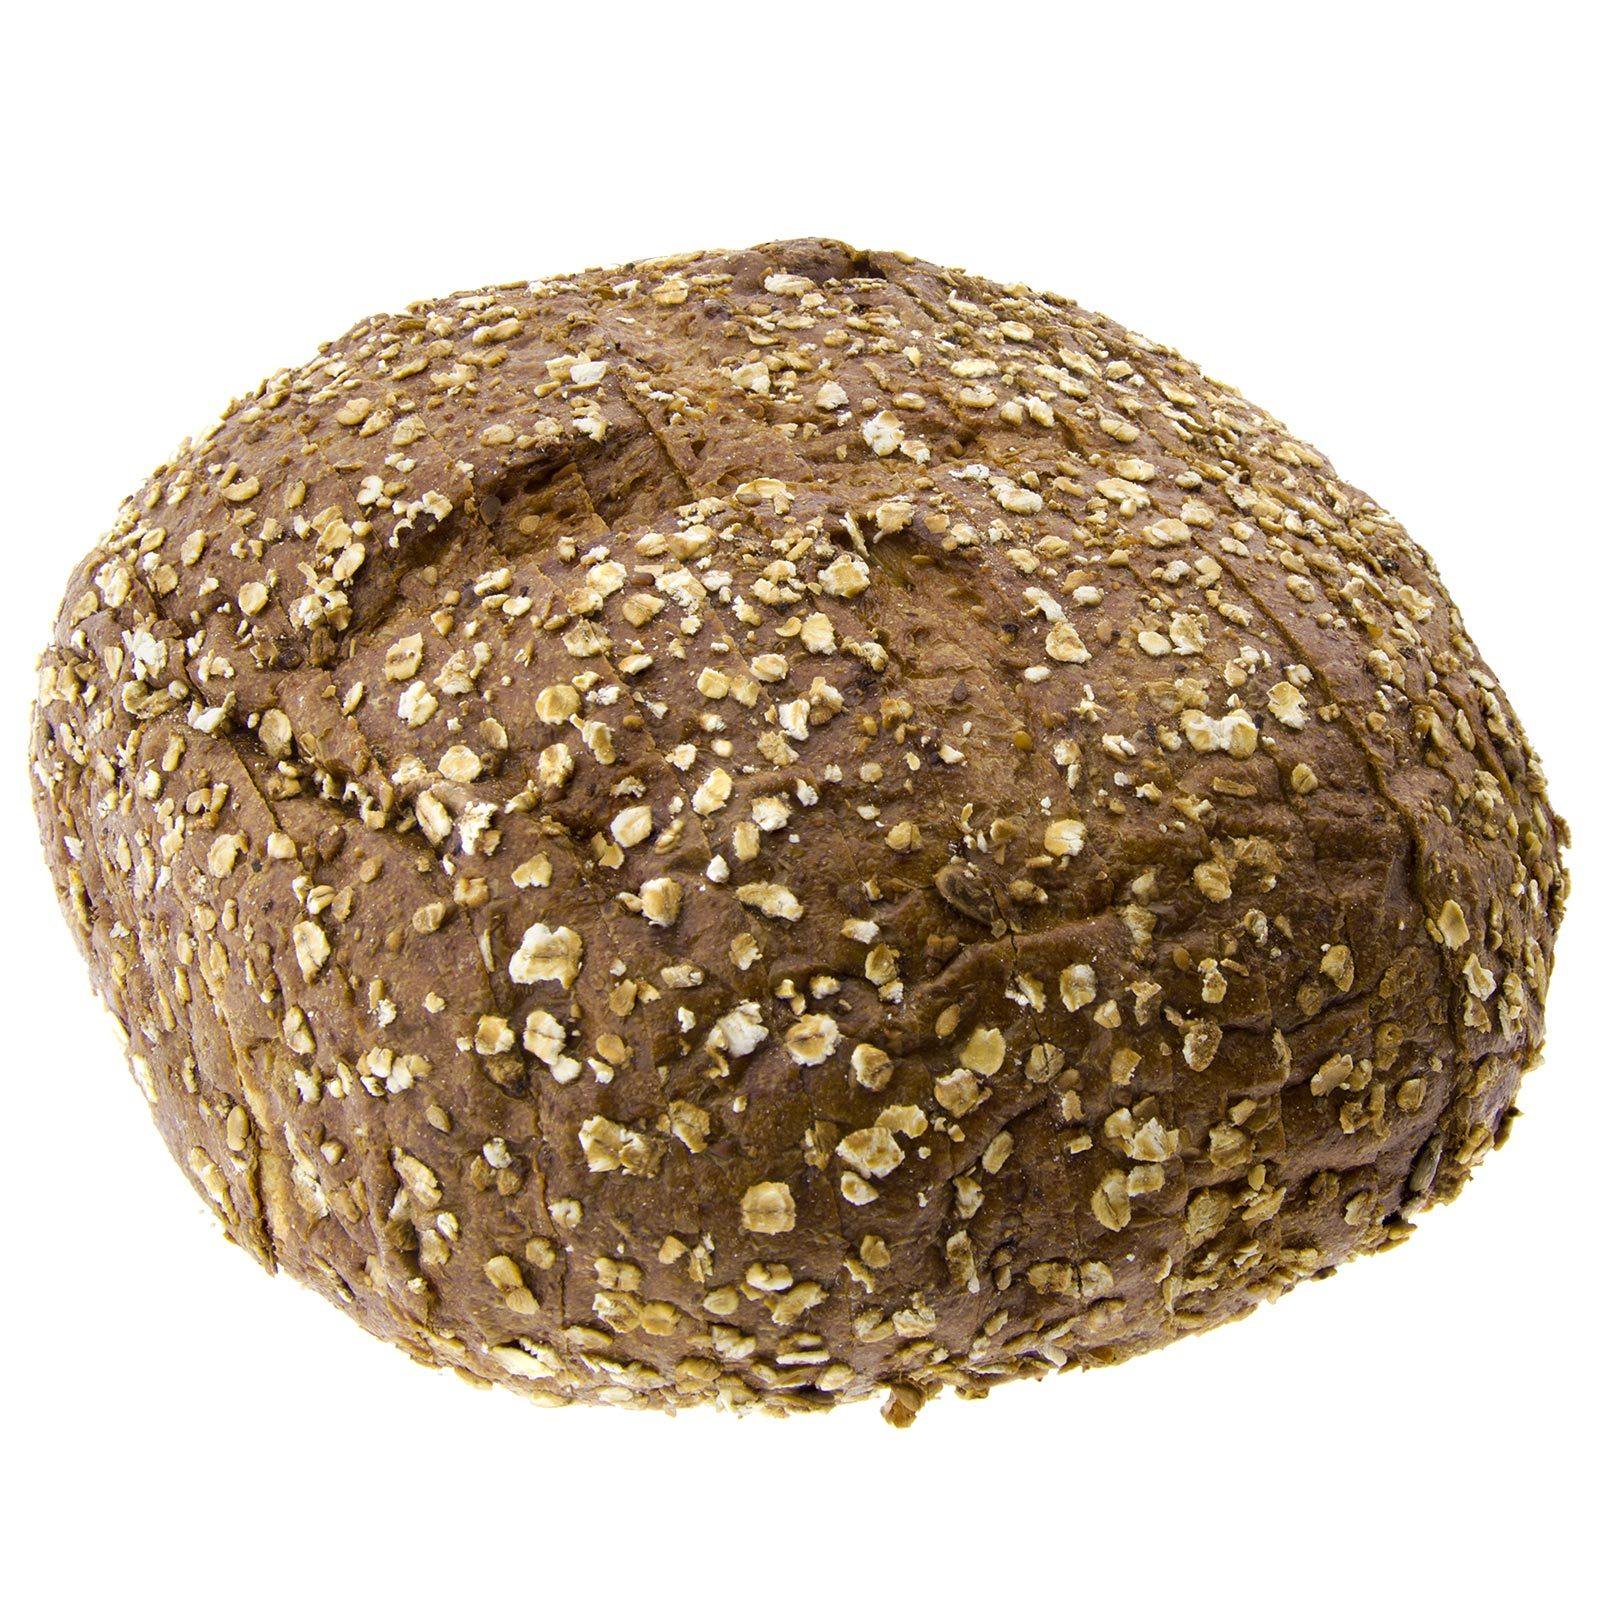 Wheat Cabezon Khorasan Kamut® Integral with 450g cereals (uncut)